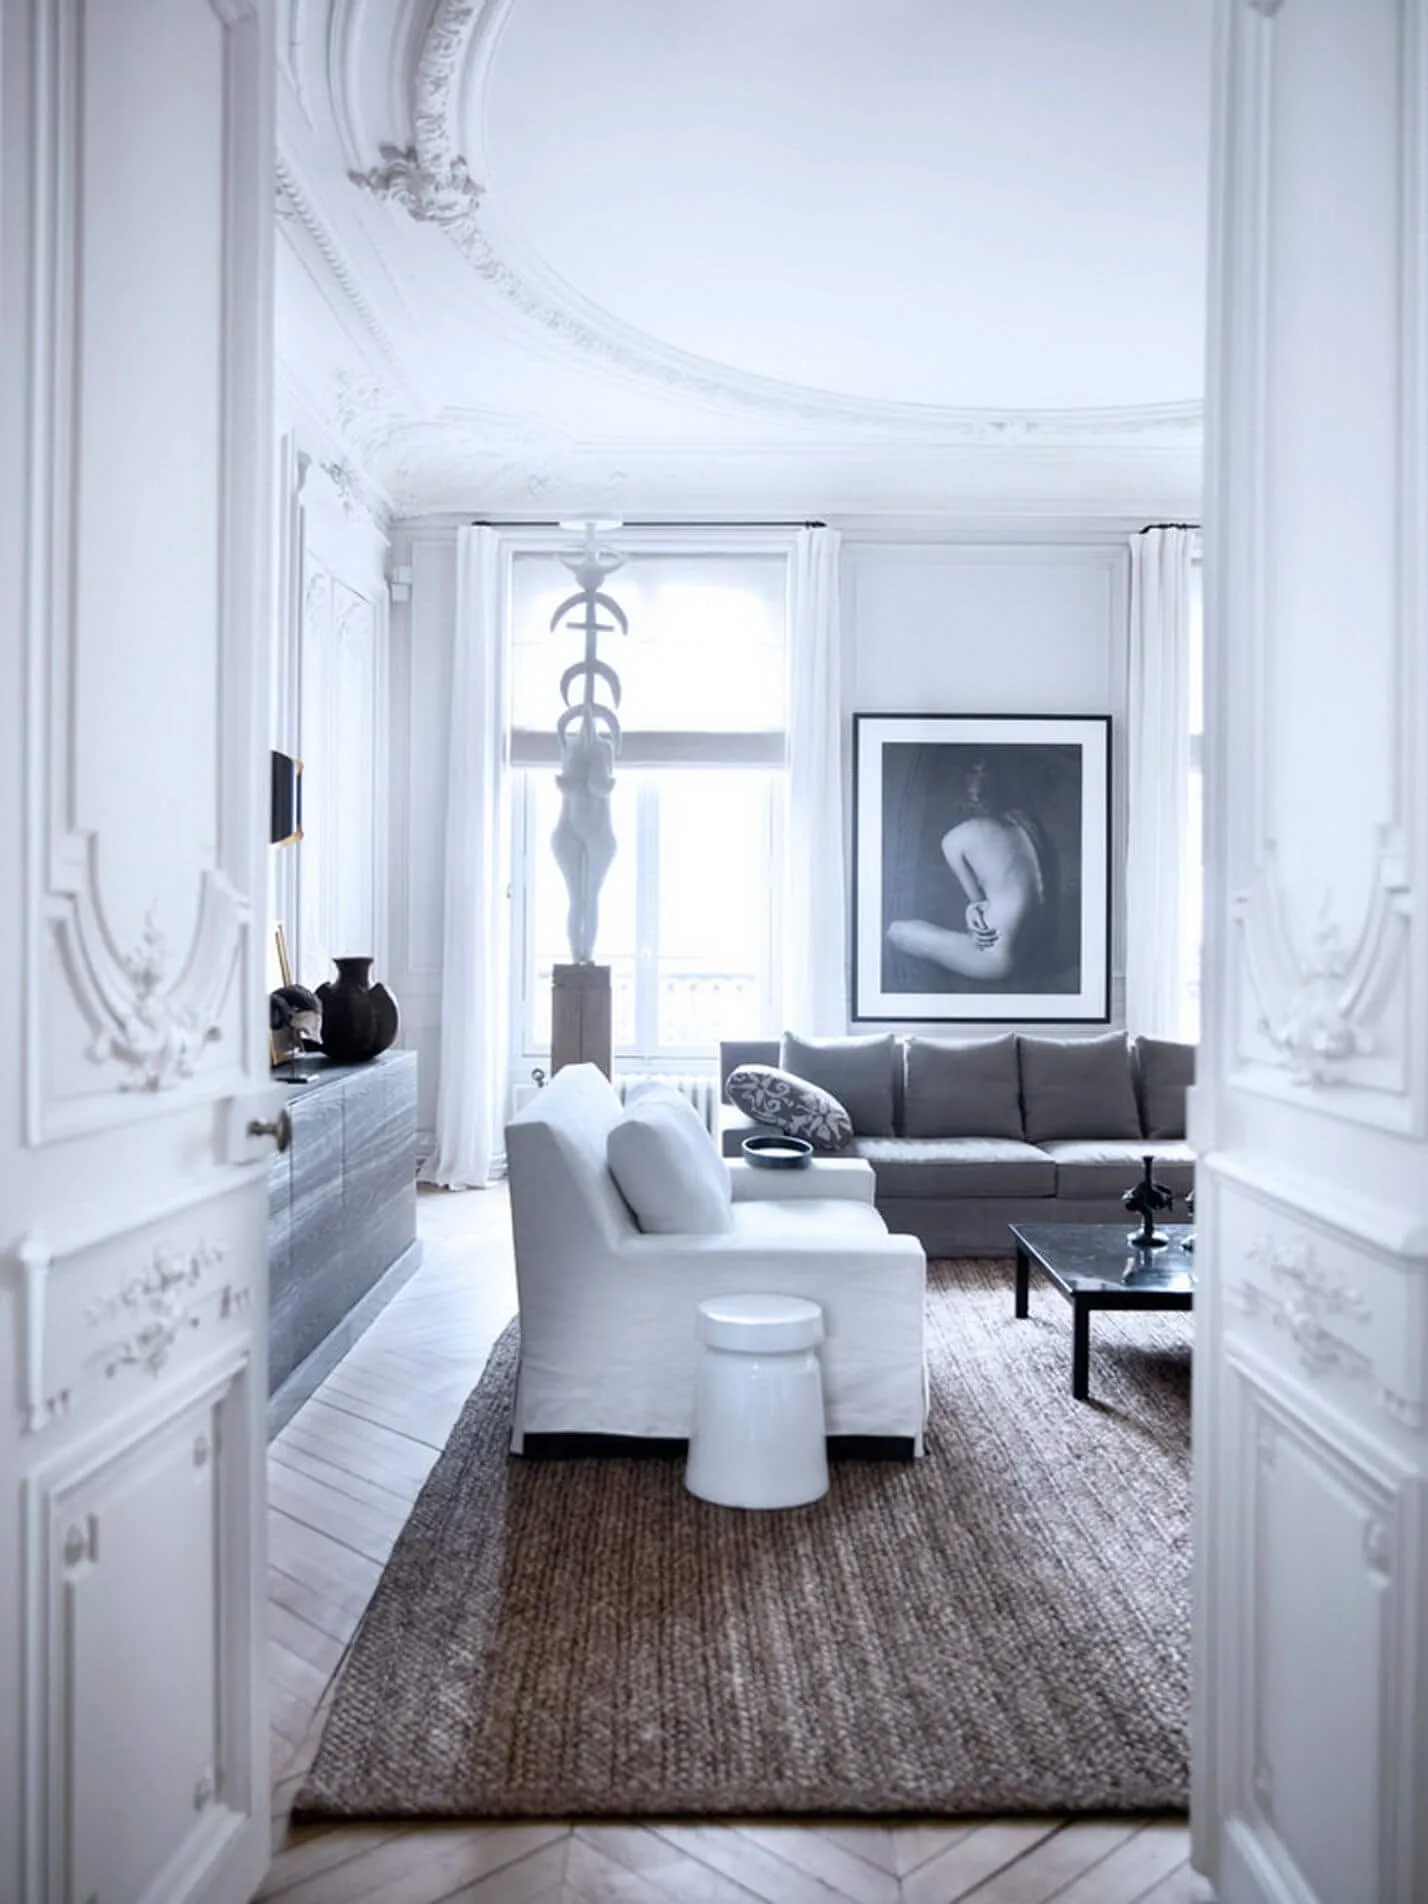 Bedroom Interior Design Collection - By Hommés Studio